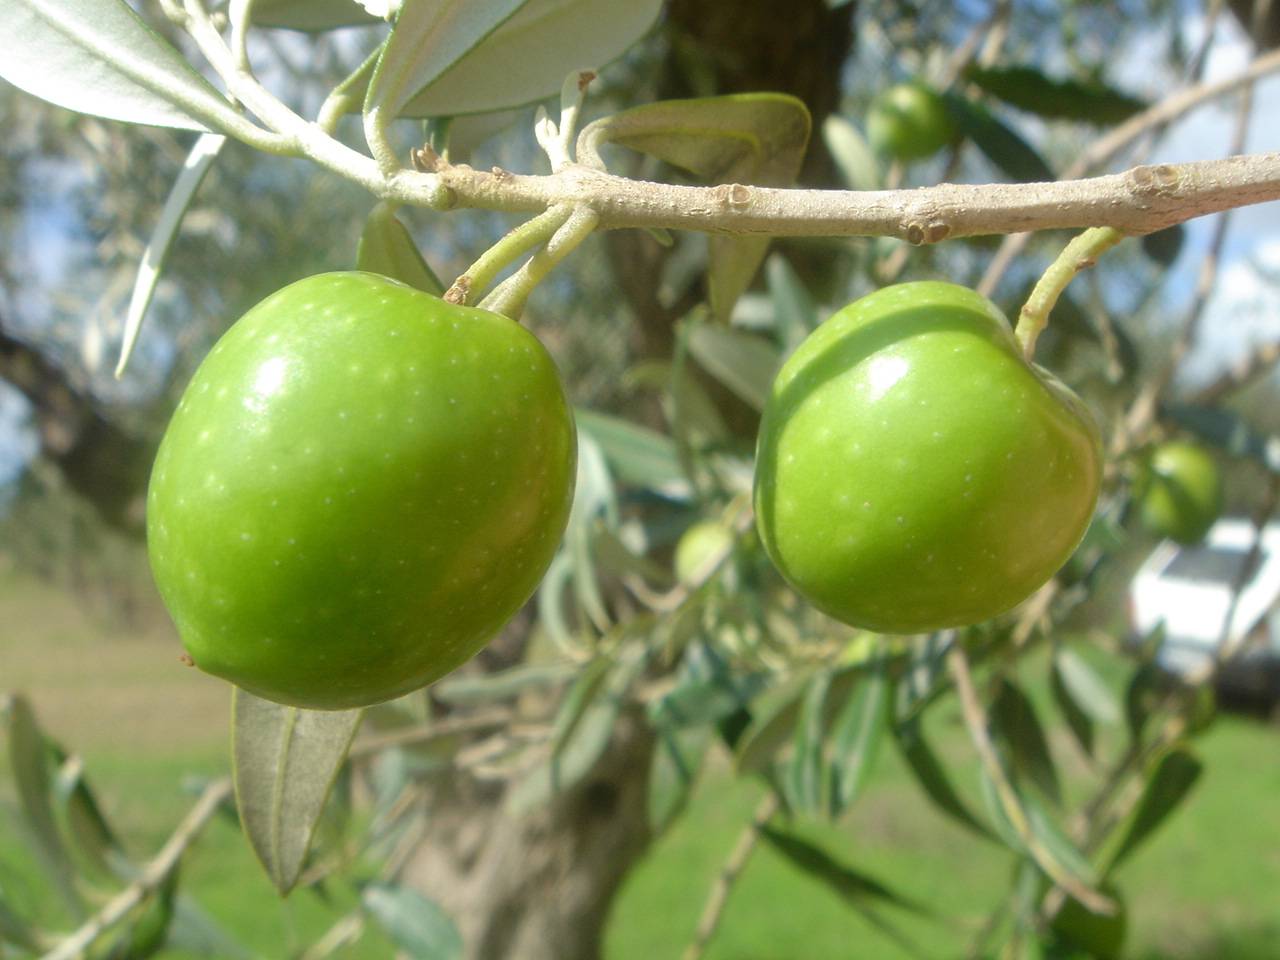 Concorso per valorizzare i migliori oli extravergine di oliva prodotti nel territorio Selinuntino